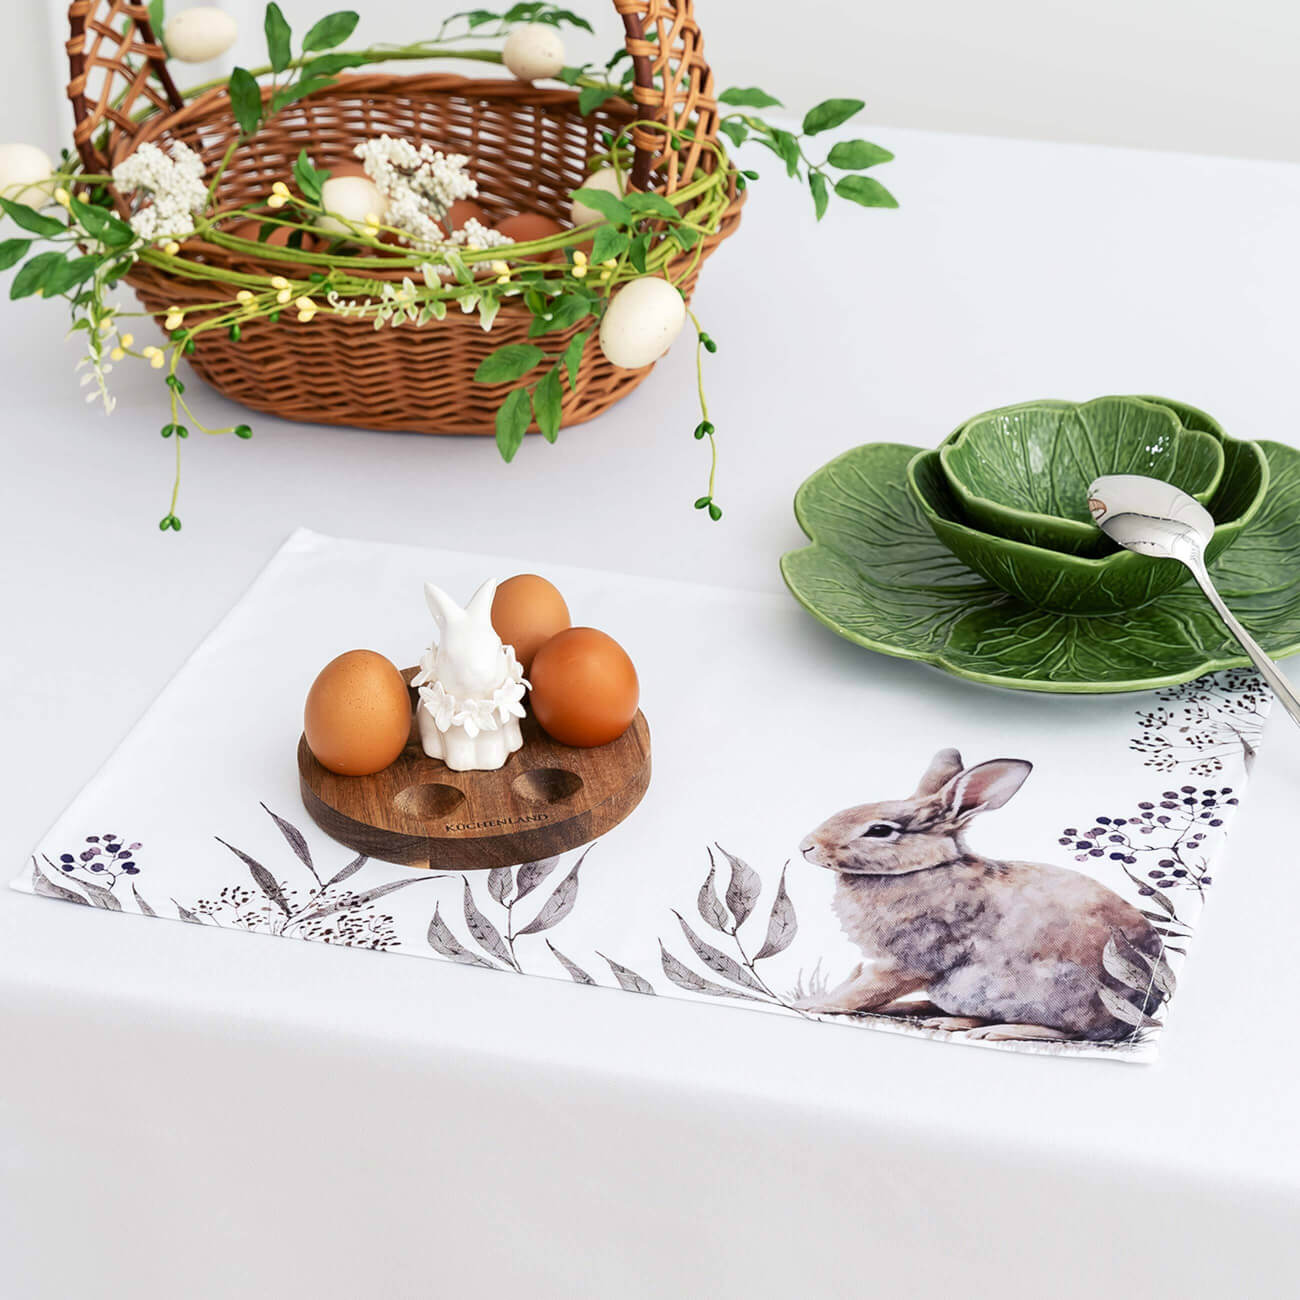 Салфетка под приборы, 30x45 см, полиэстер, белая, Кролик в листве, Natural Easter салфетка под приборы 30x45 см полиэстер белая кролик в листве natural easter